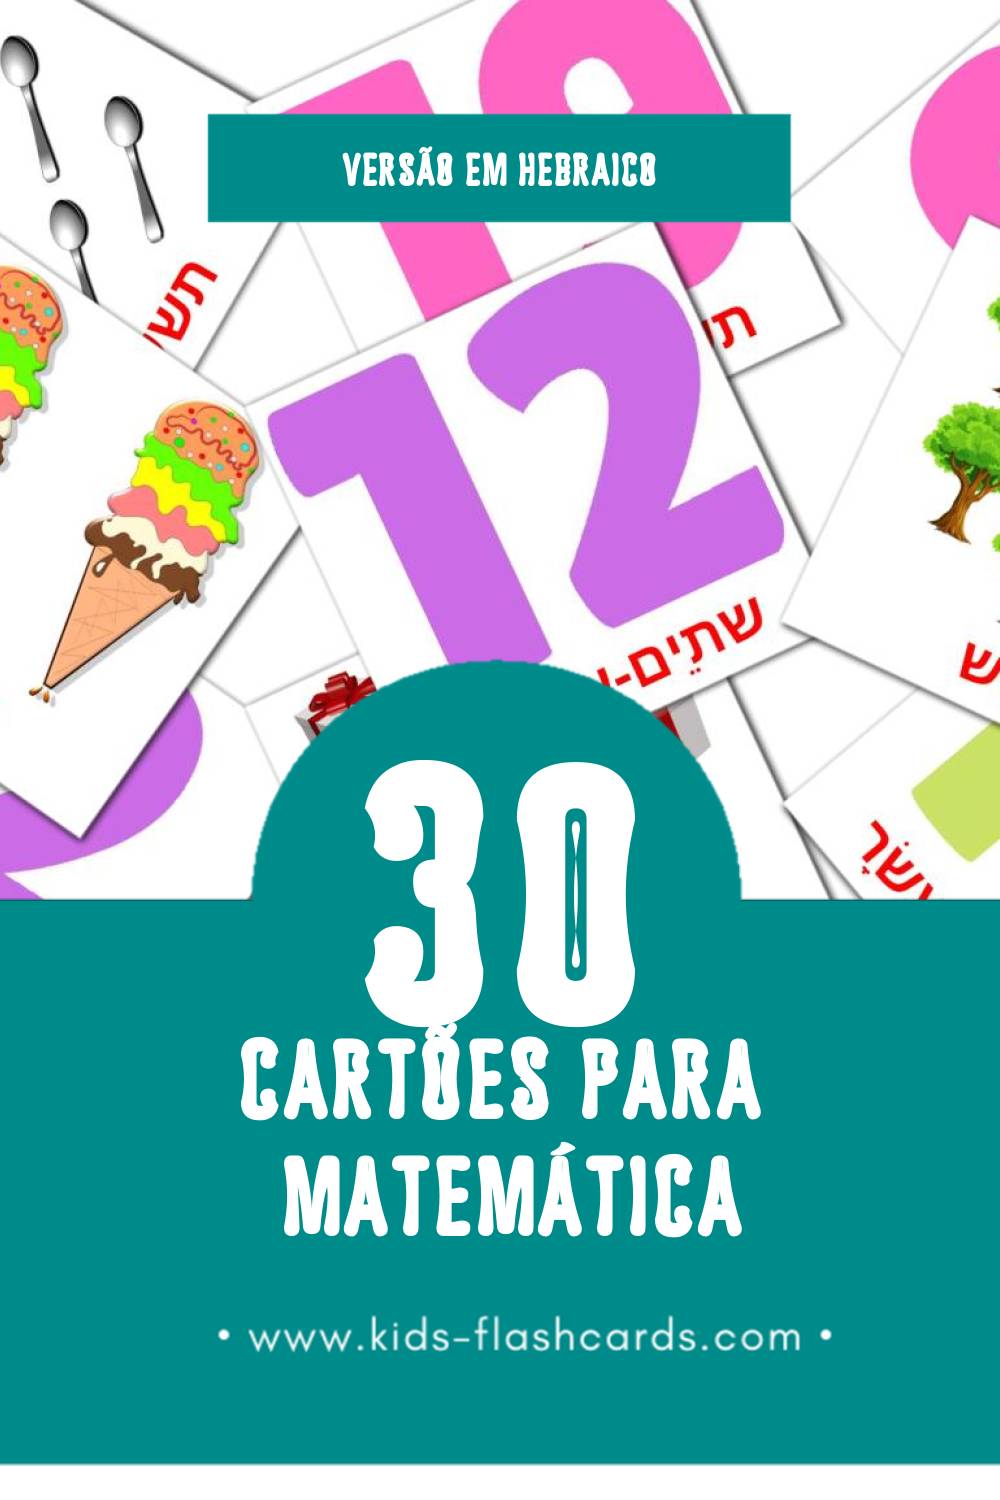 Flashcards de מתמטיקה Visuais para Toddlers (30 cartões em Hebraico)